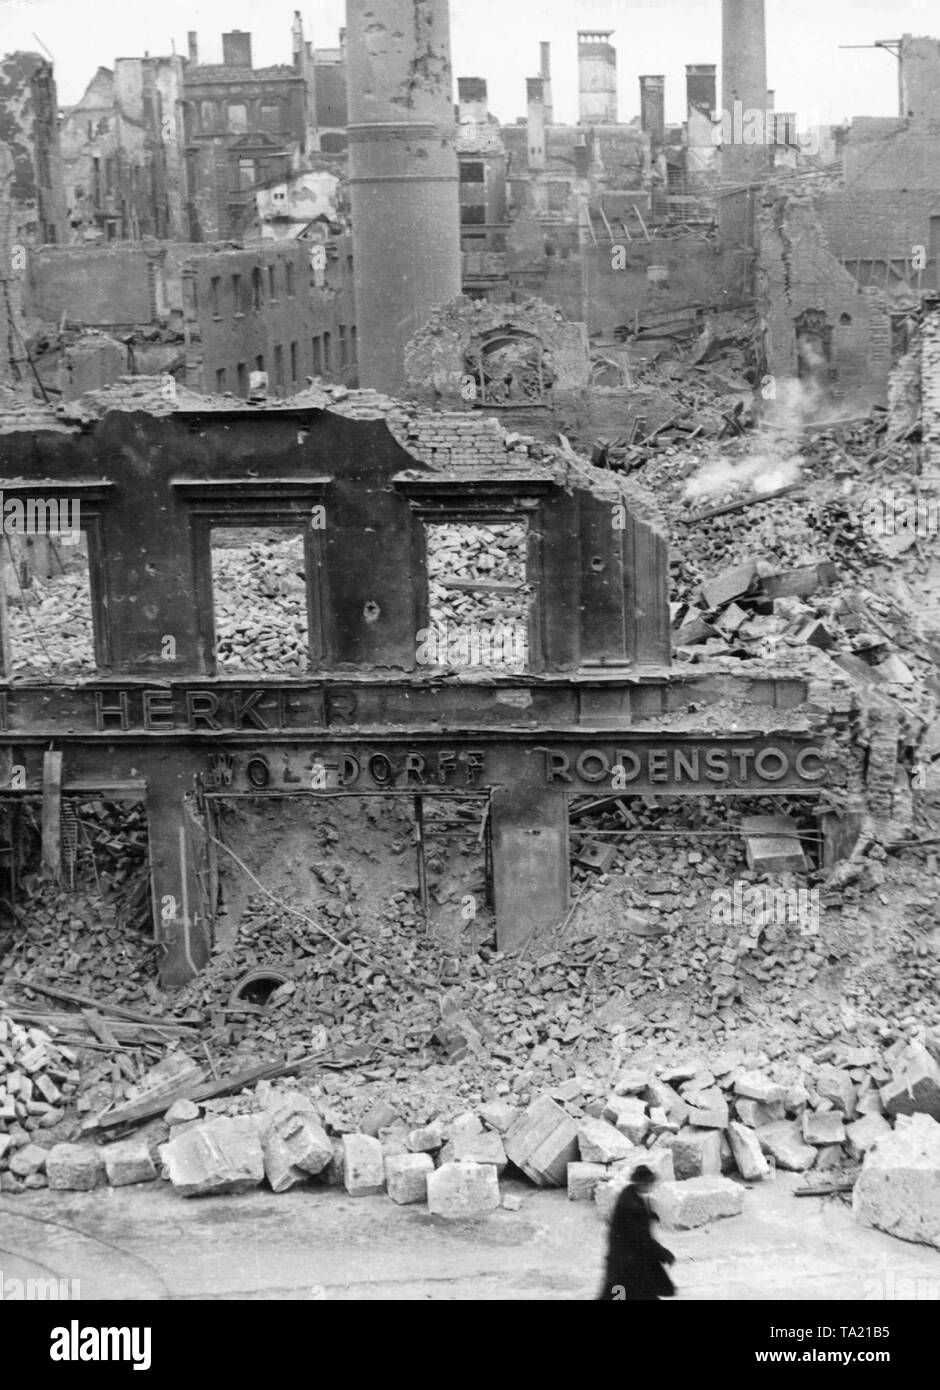 Das Stadtzentrum von München durch die alliierten Luftangriffe im Frühjahr 1945 zerstört. Im Vordergrund Ruinen ist die Inschrift "Herker', 'Wolsdorf" und "Rodenstock". Stockfoto